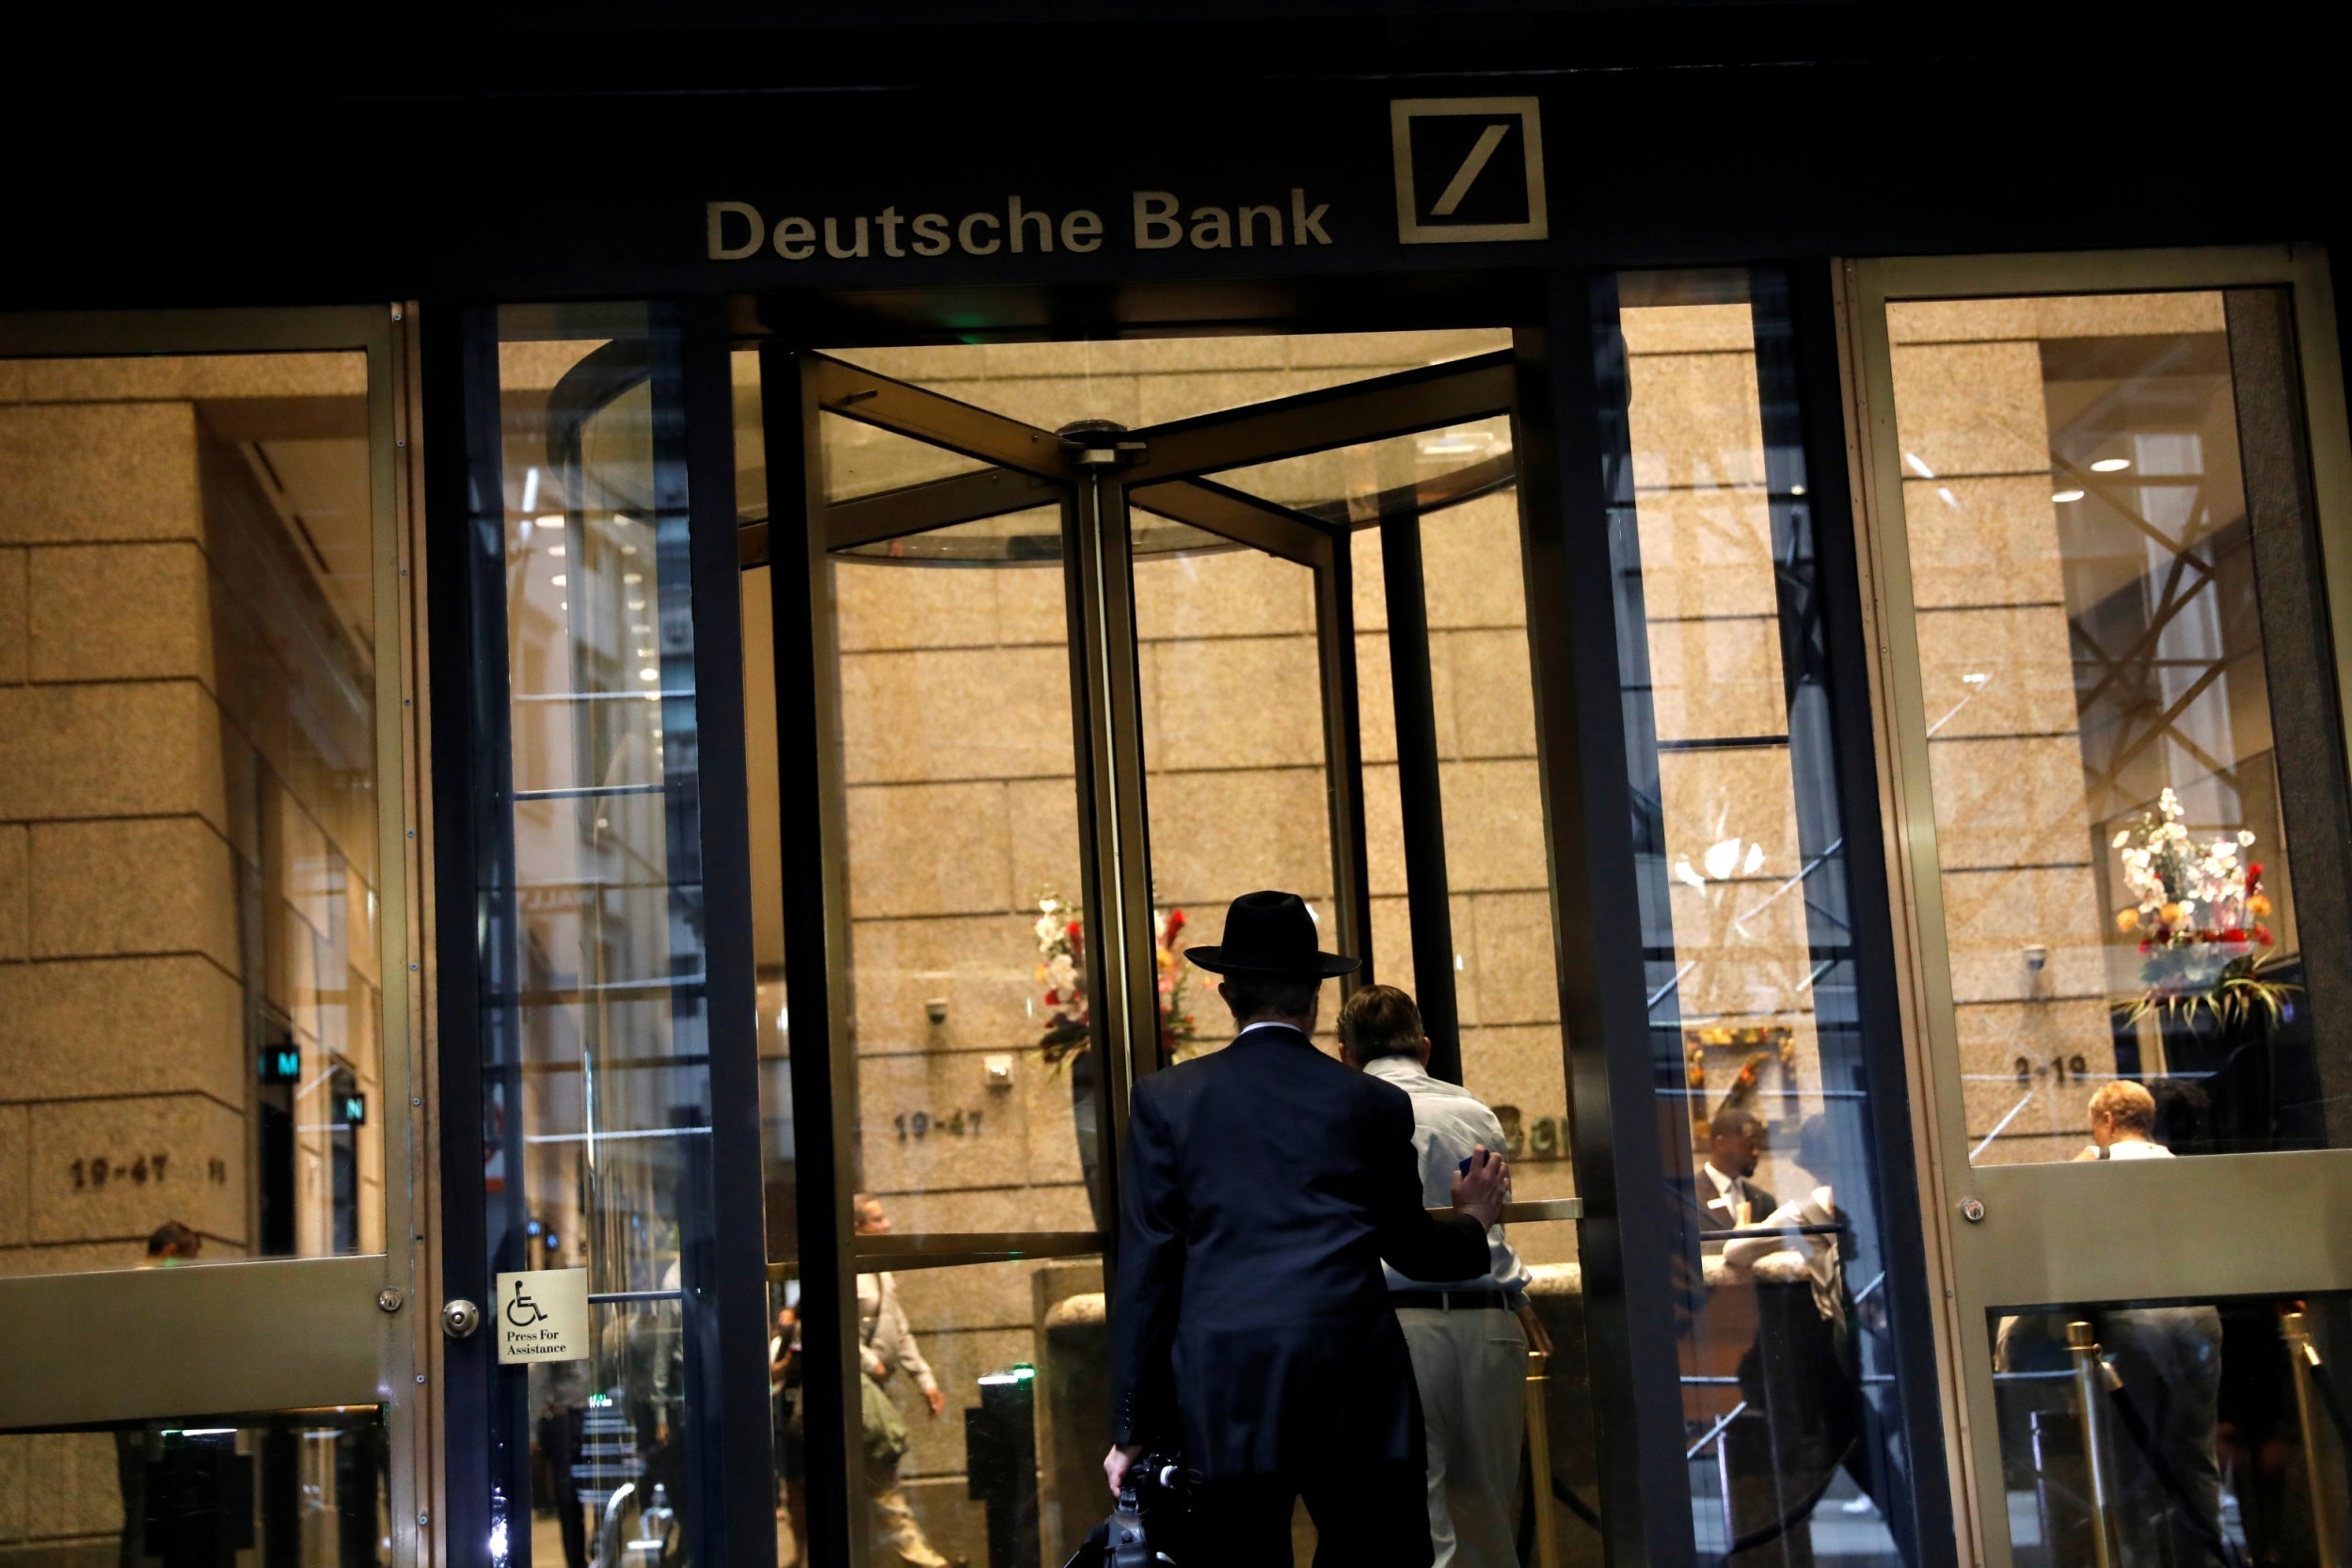 The US headquarters of Deutsche Bank in New York City